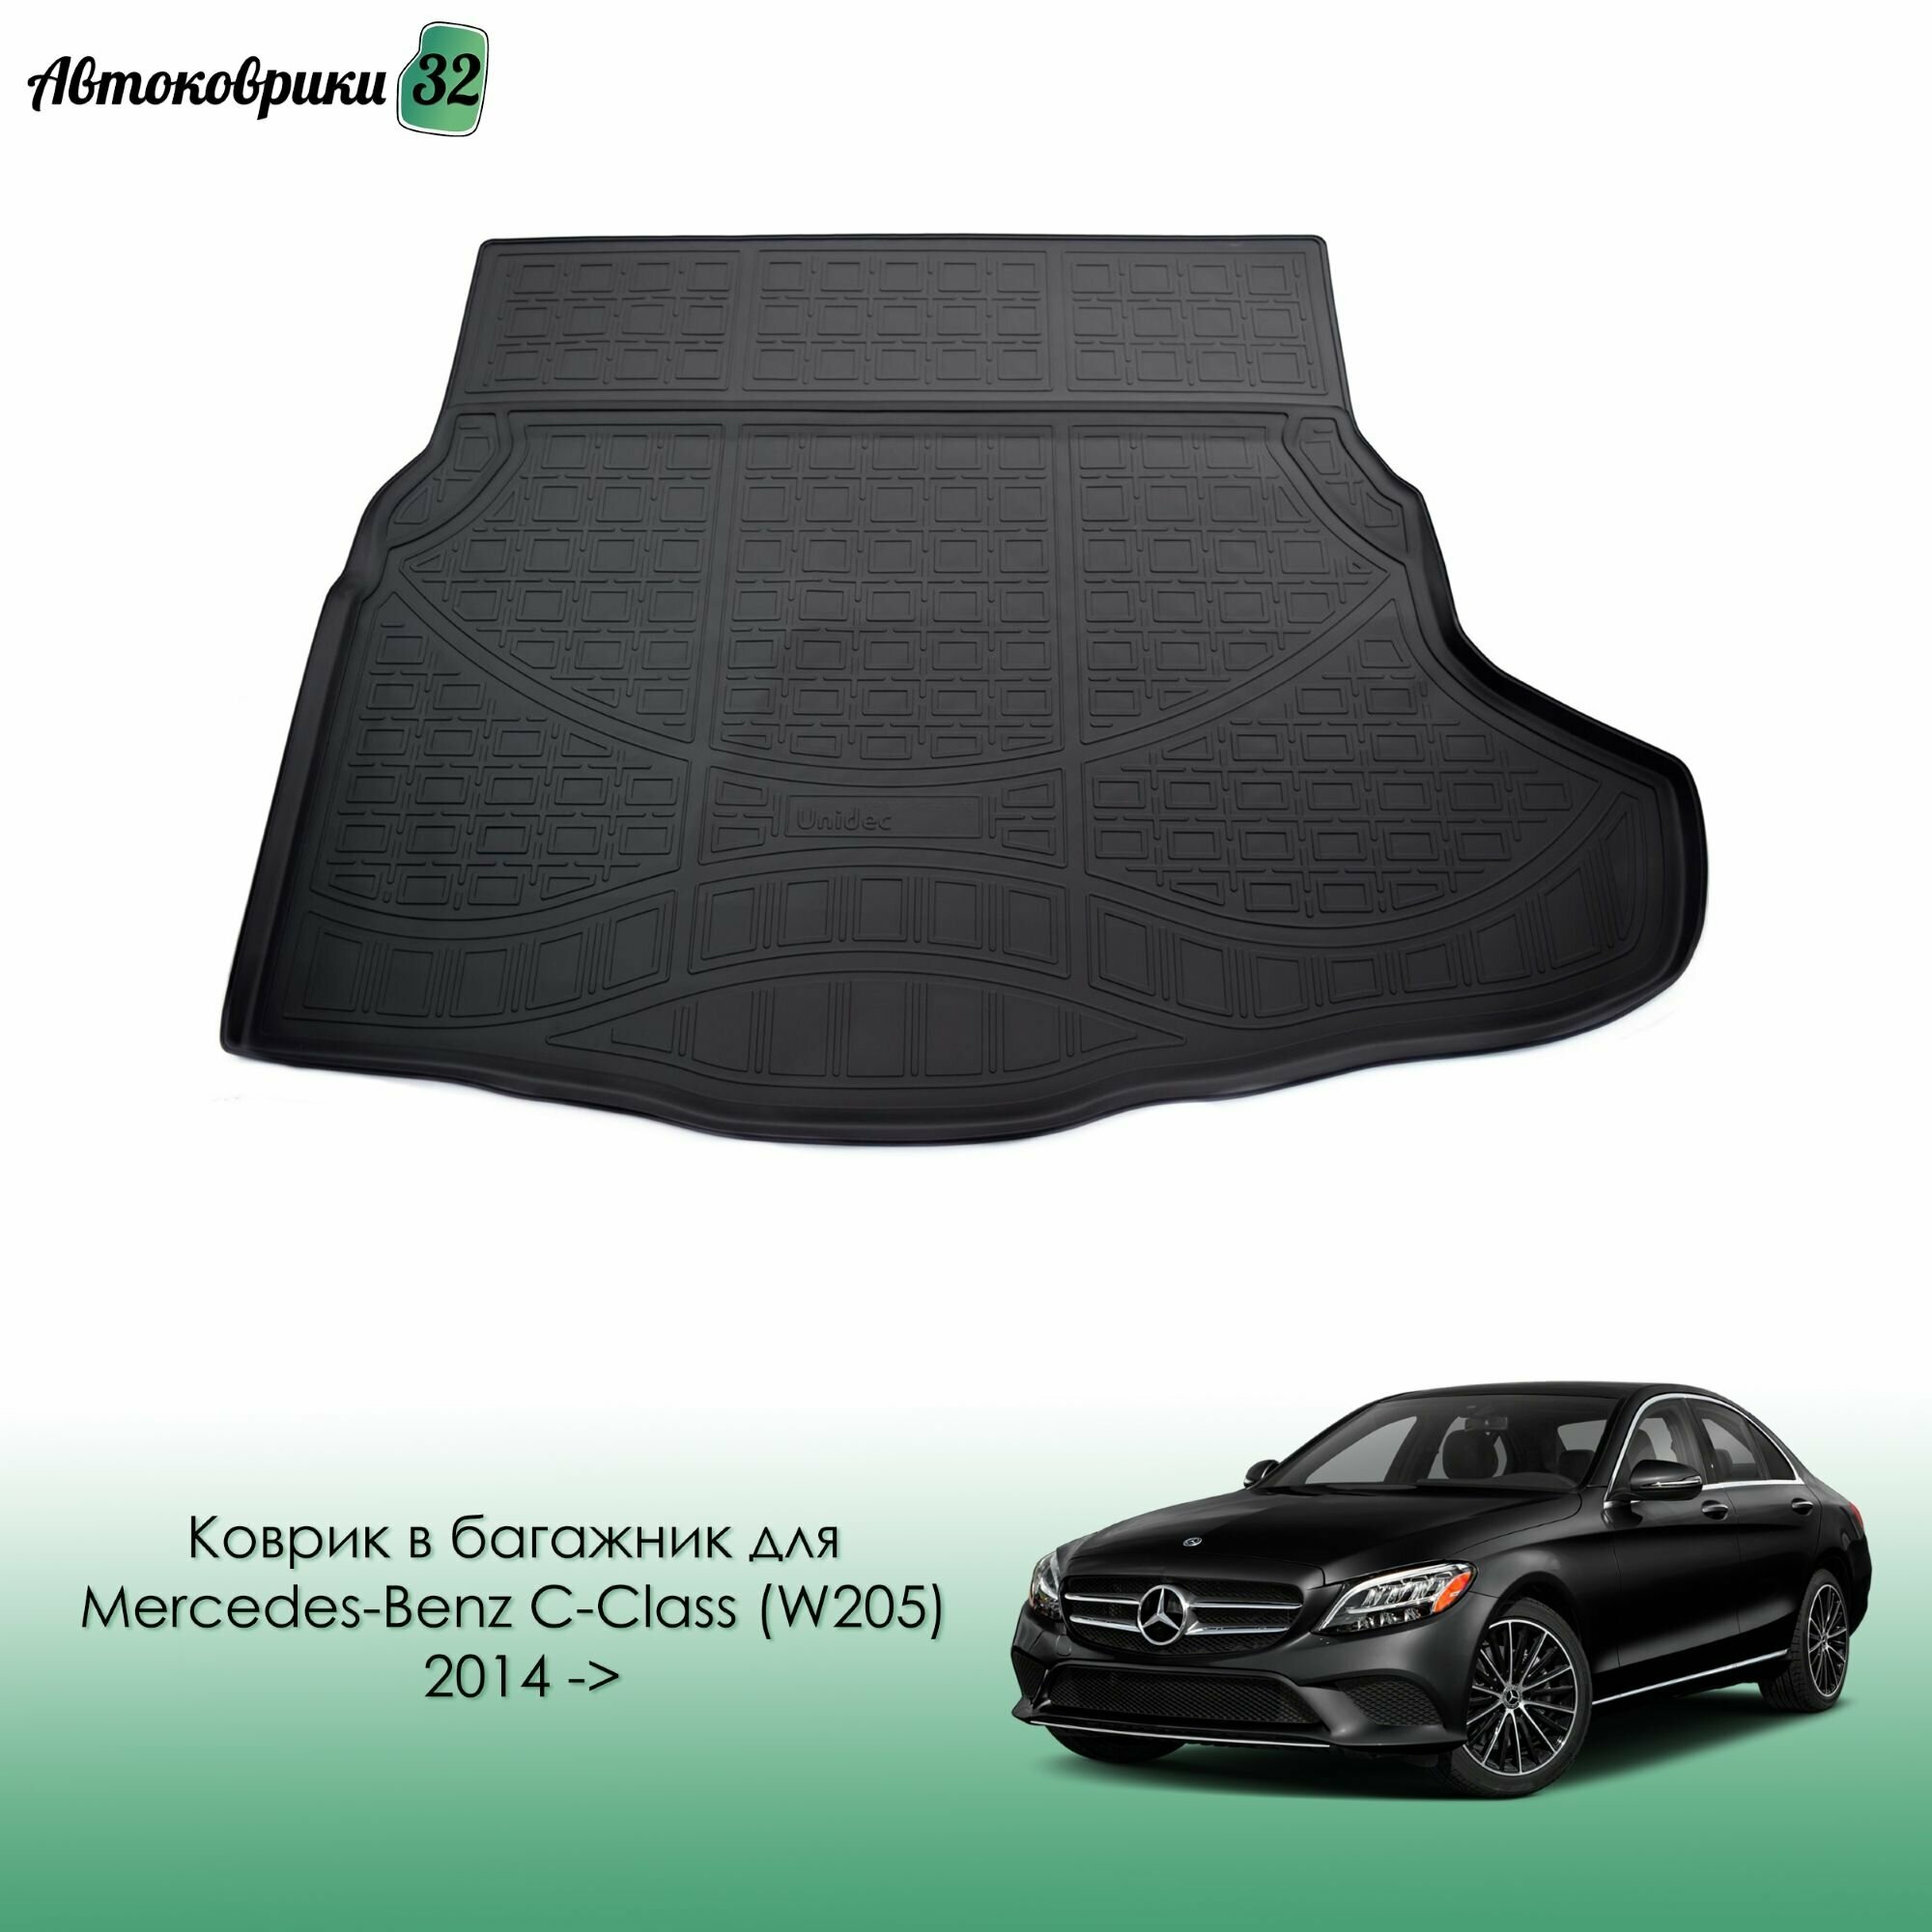 Коврик в багажник для Mercedes-Benz C-Class (W205) 2014- полиуретановый / Мерседес C-Класс W205 с 2014 года